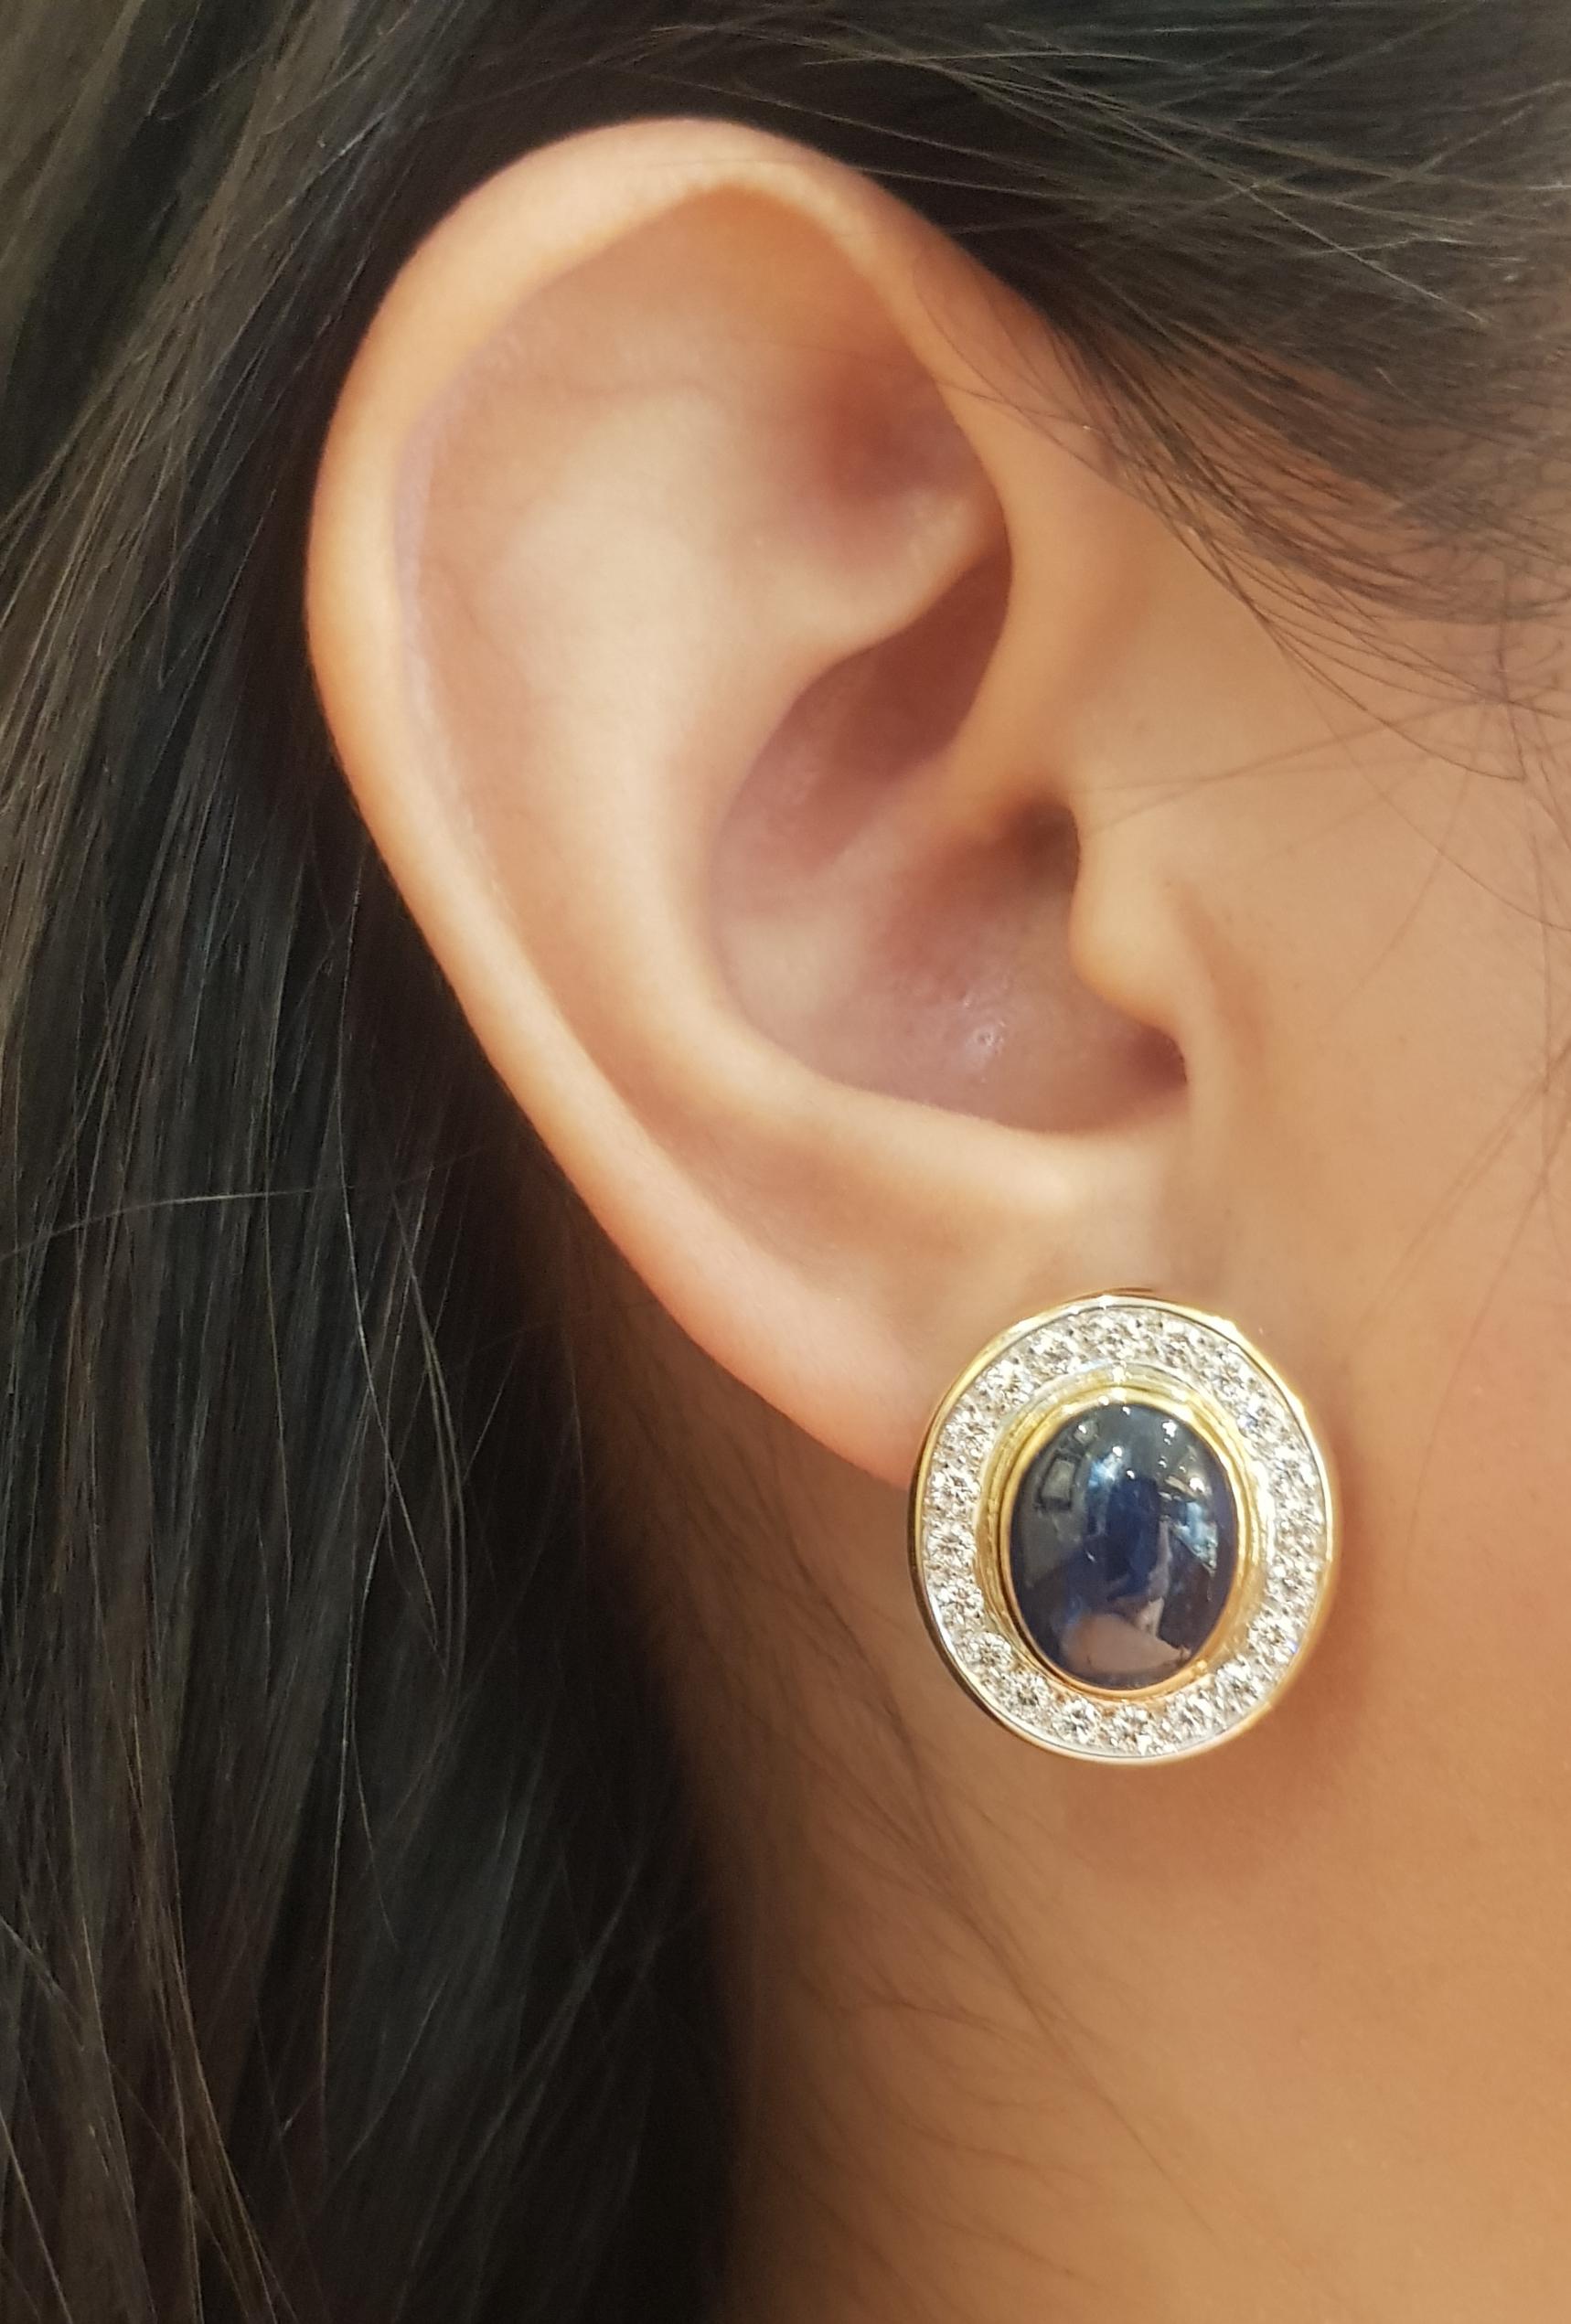 Cabochon Blauer Saphir 12,41 Karat mit Diamant 1,01 Karat Ohrringe in 18K Goldfassung

Breite: 1.8 cm 
Länge: 2.1 cm
Gesamtgewicht: 12,69 Gramm

